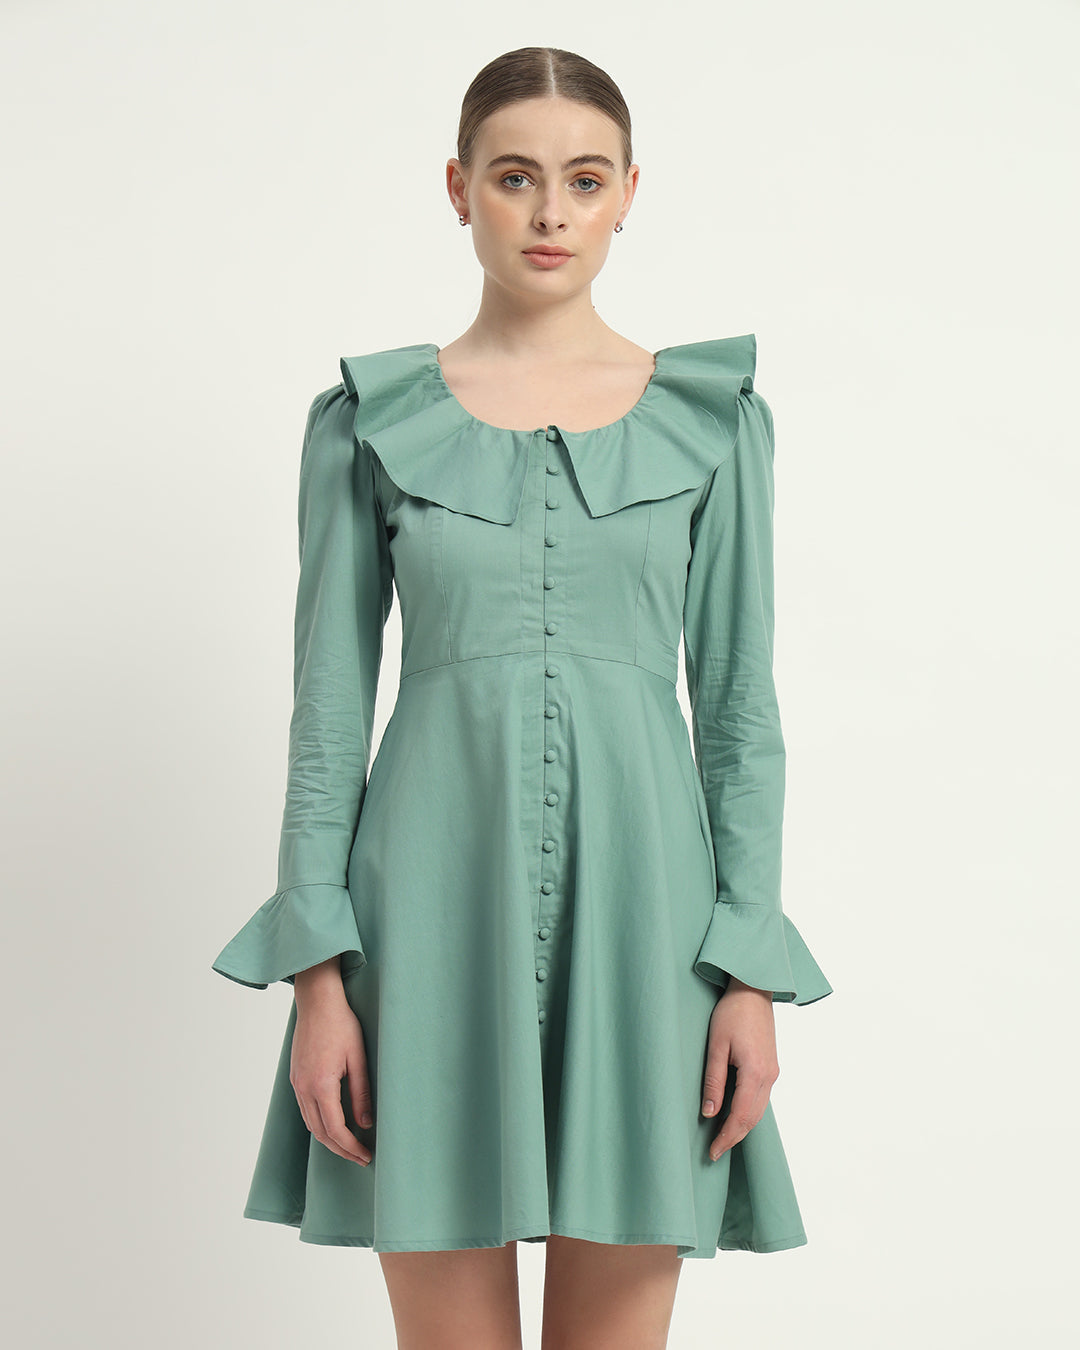 The Mint Fredonia Cotton Dress